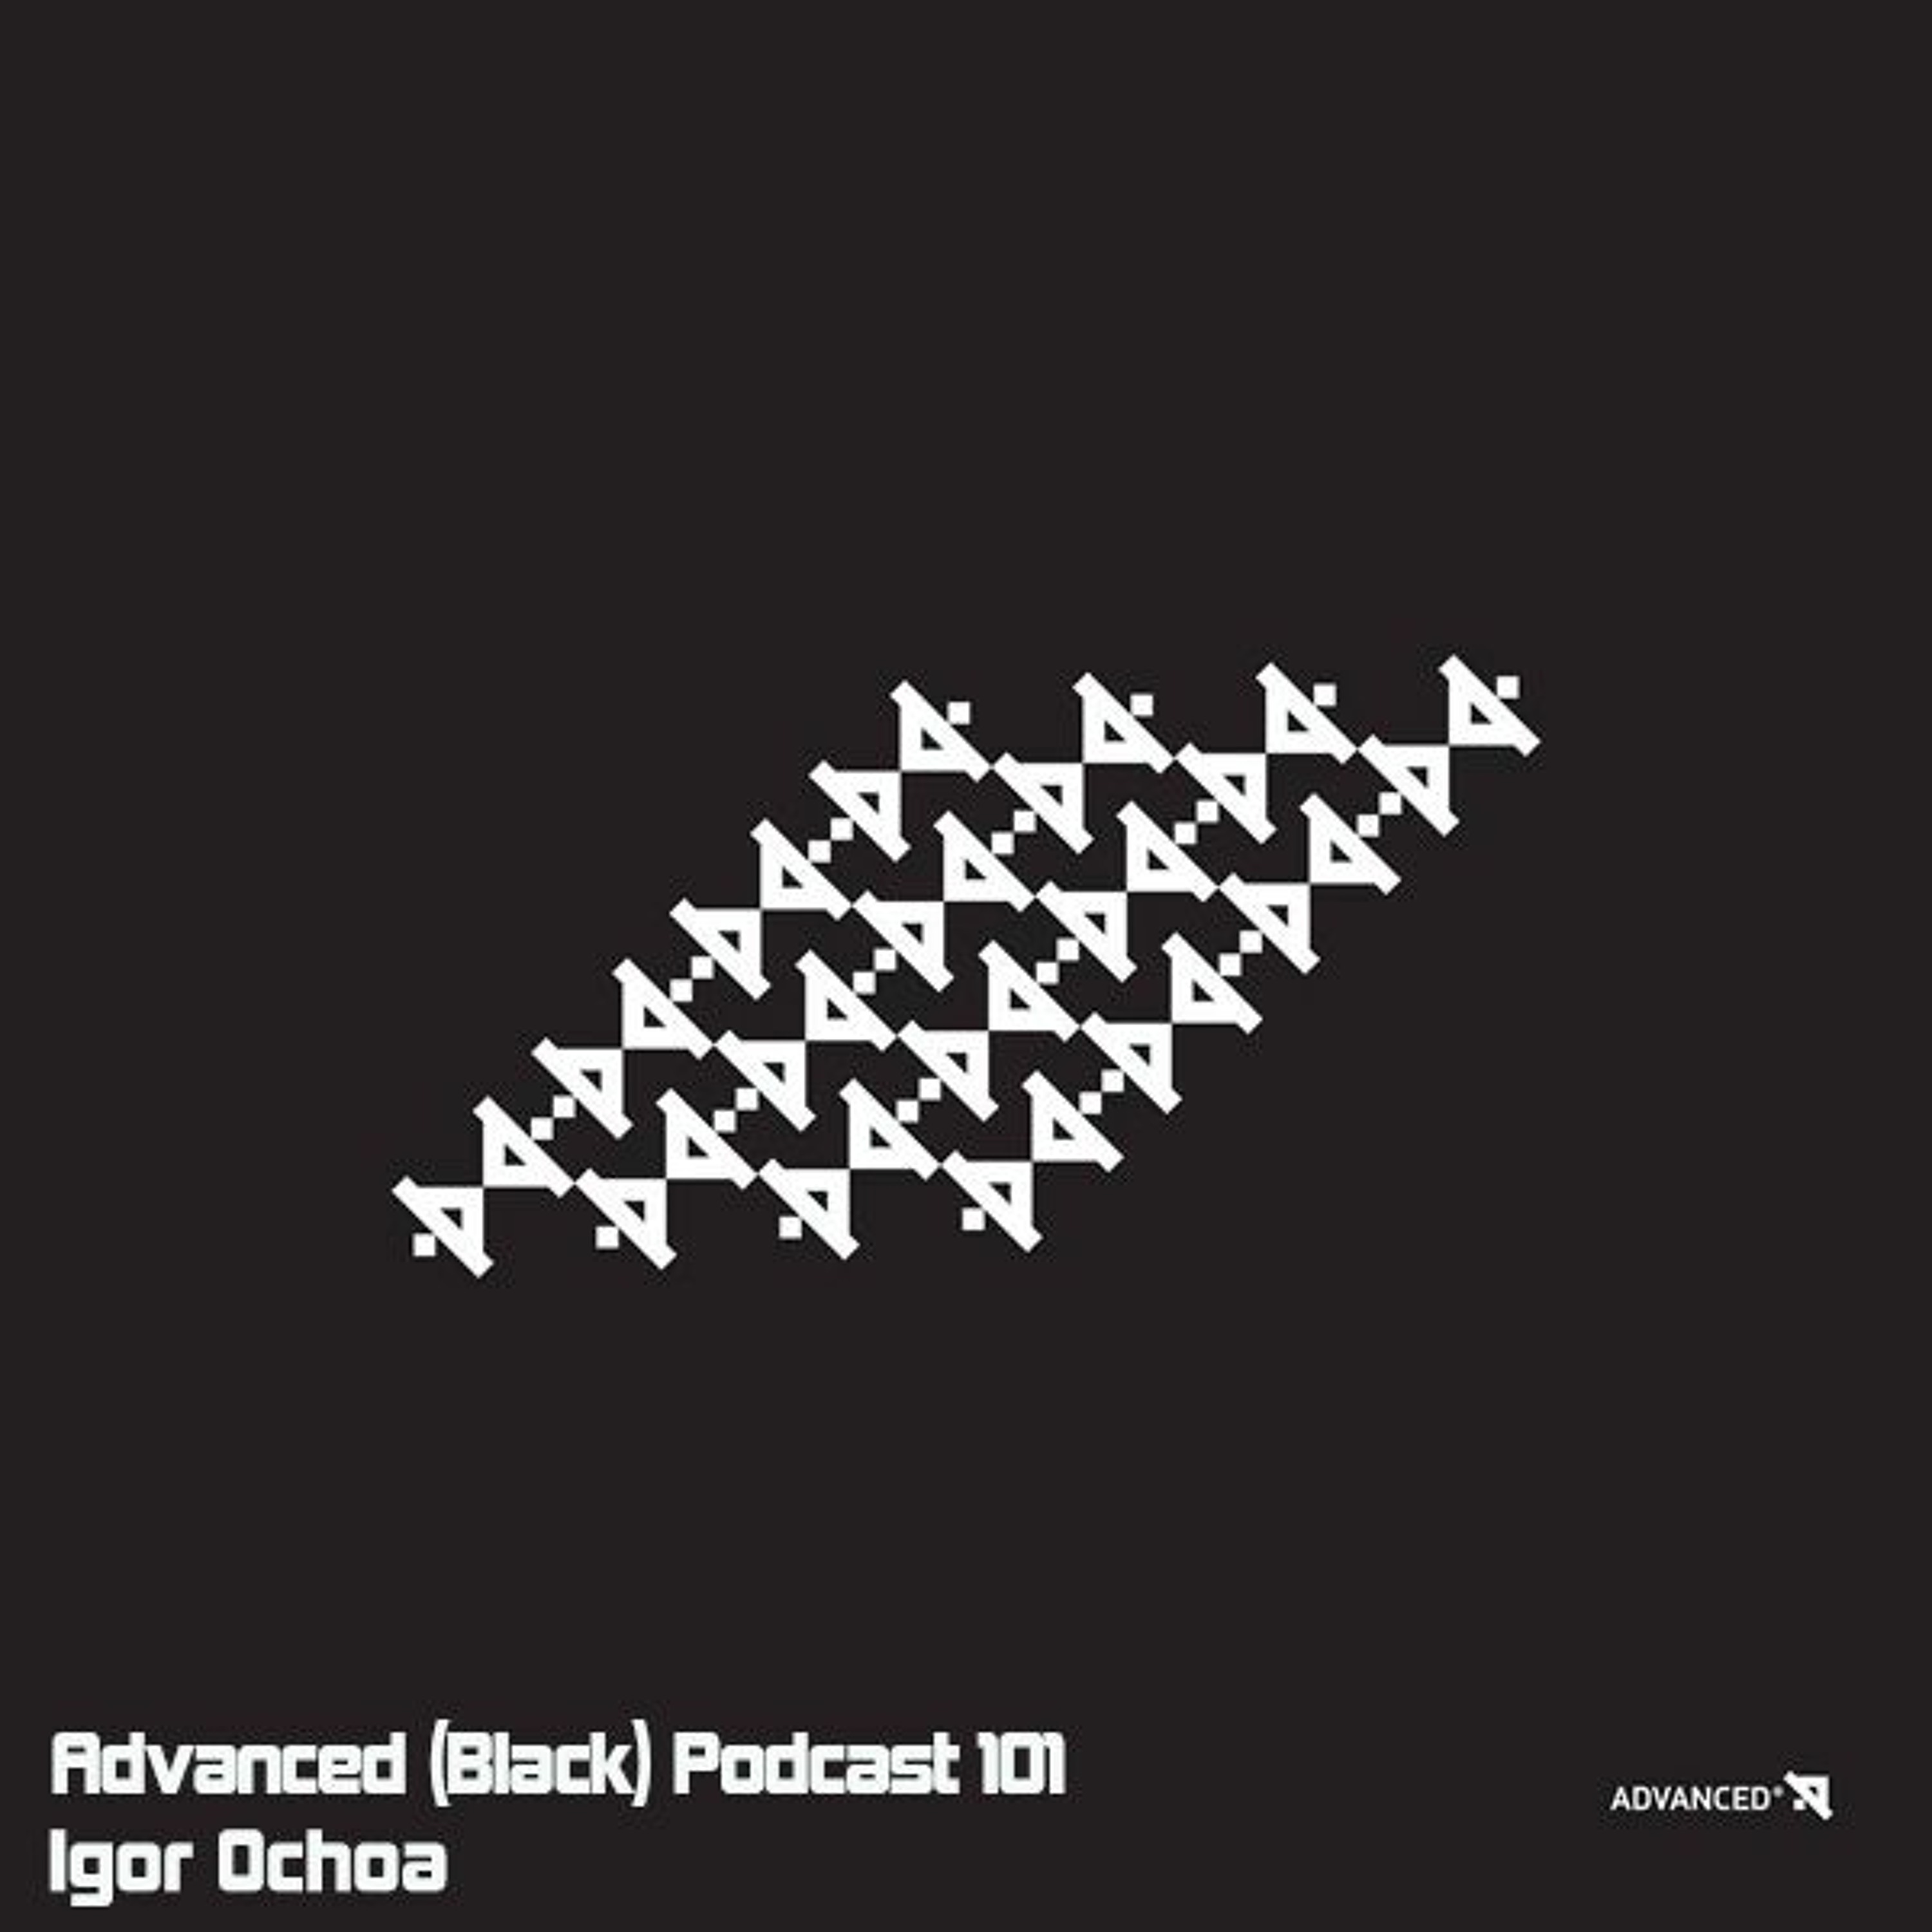 Advanced (Black) Podcast 101 with Igor Ochoa